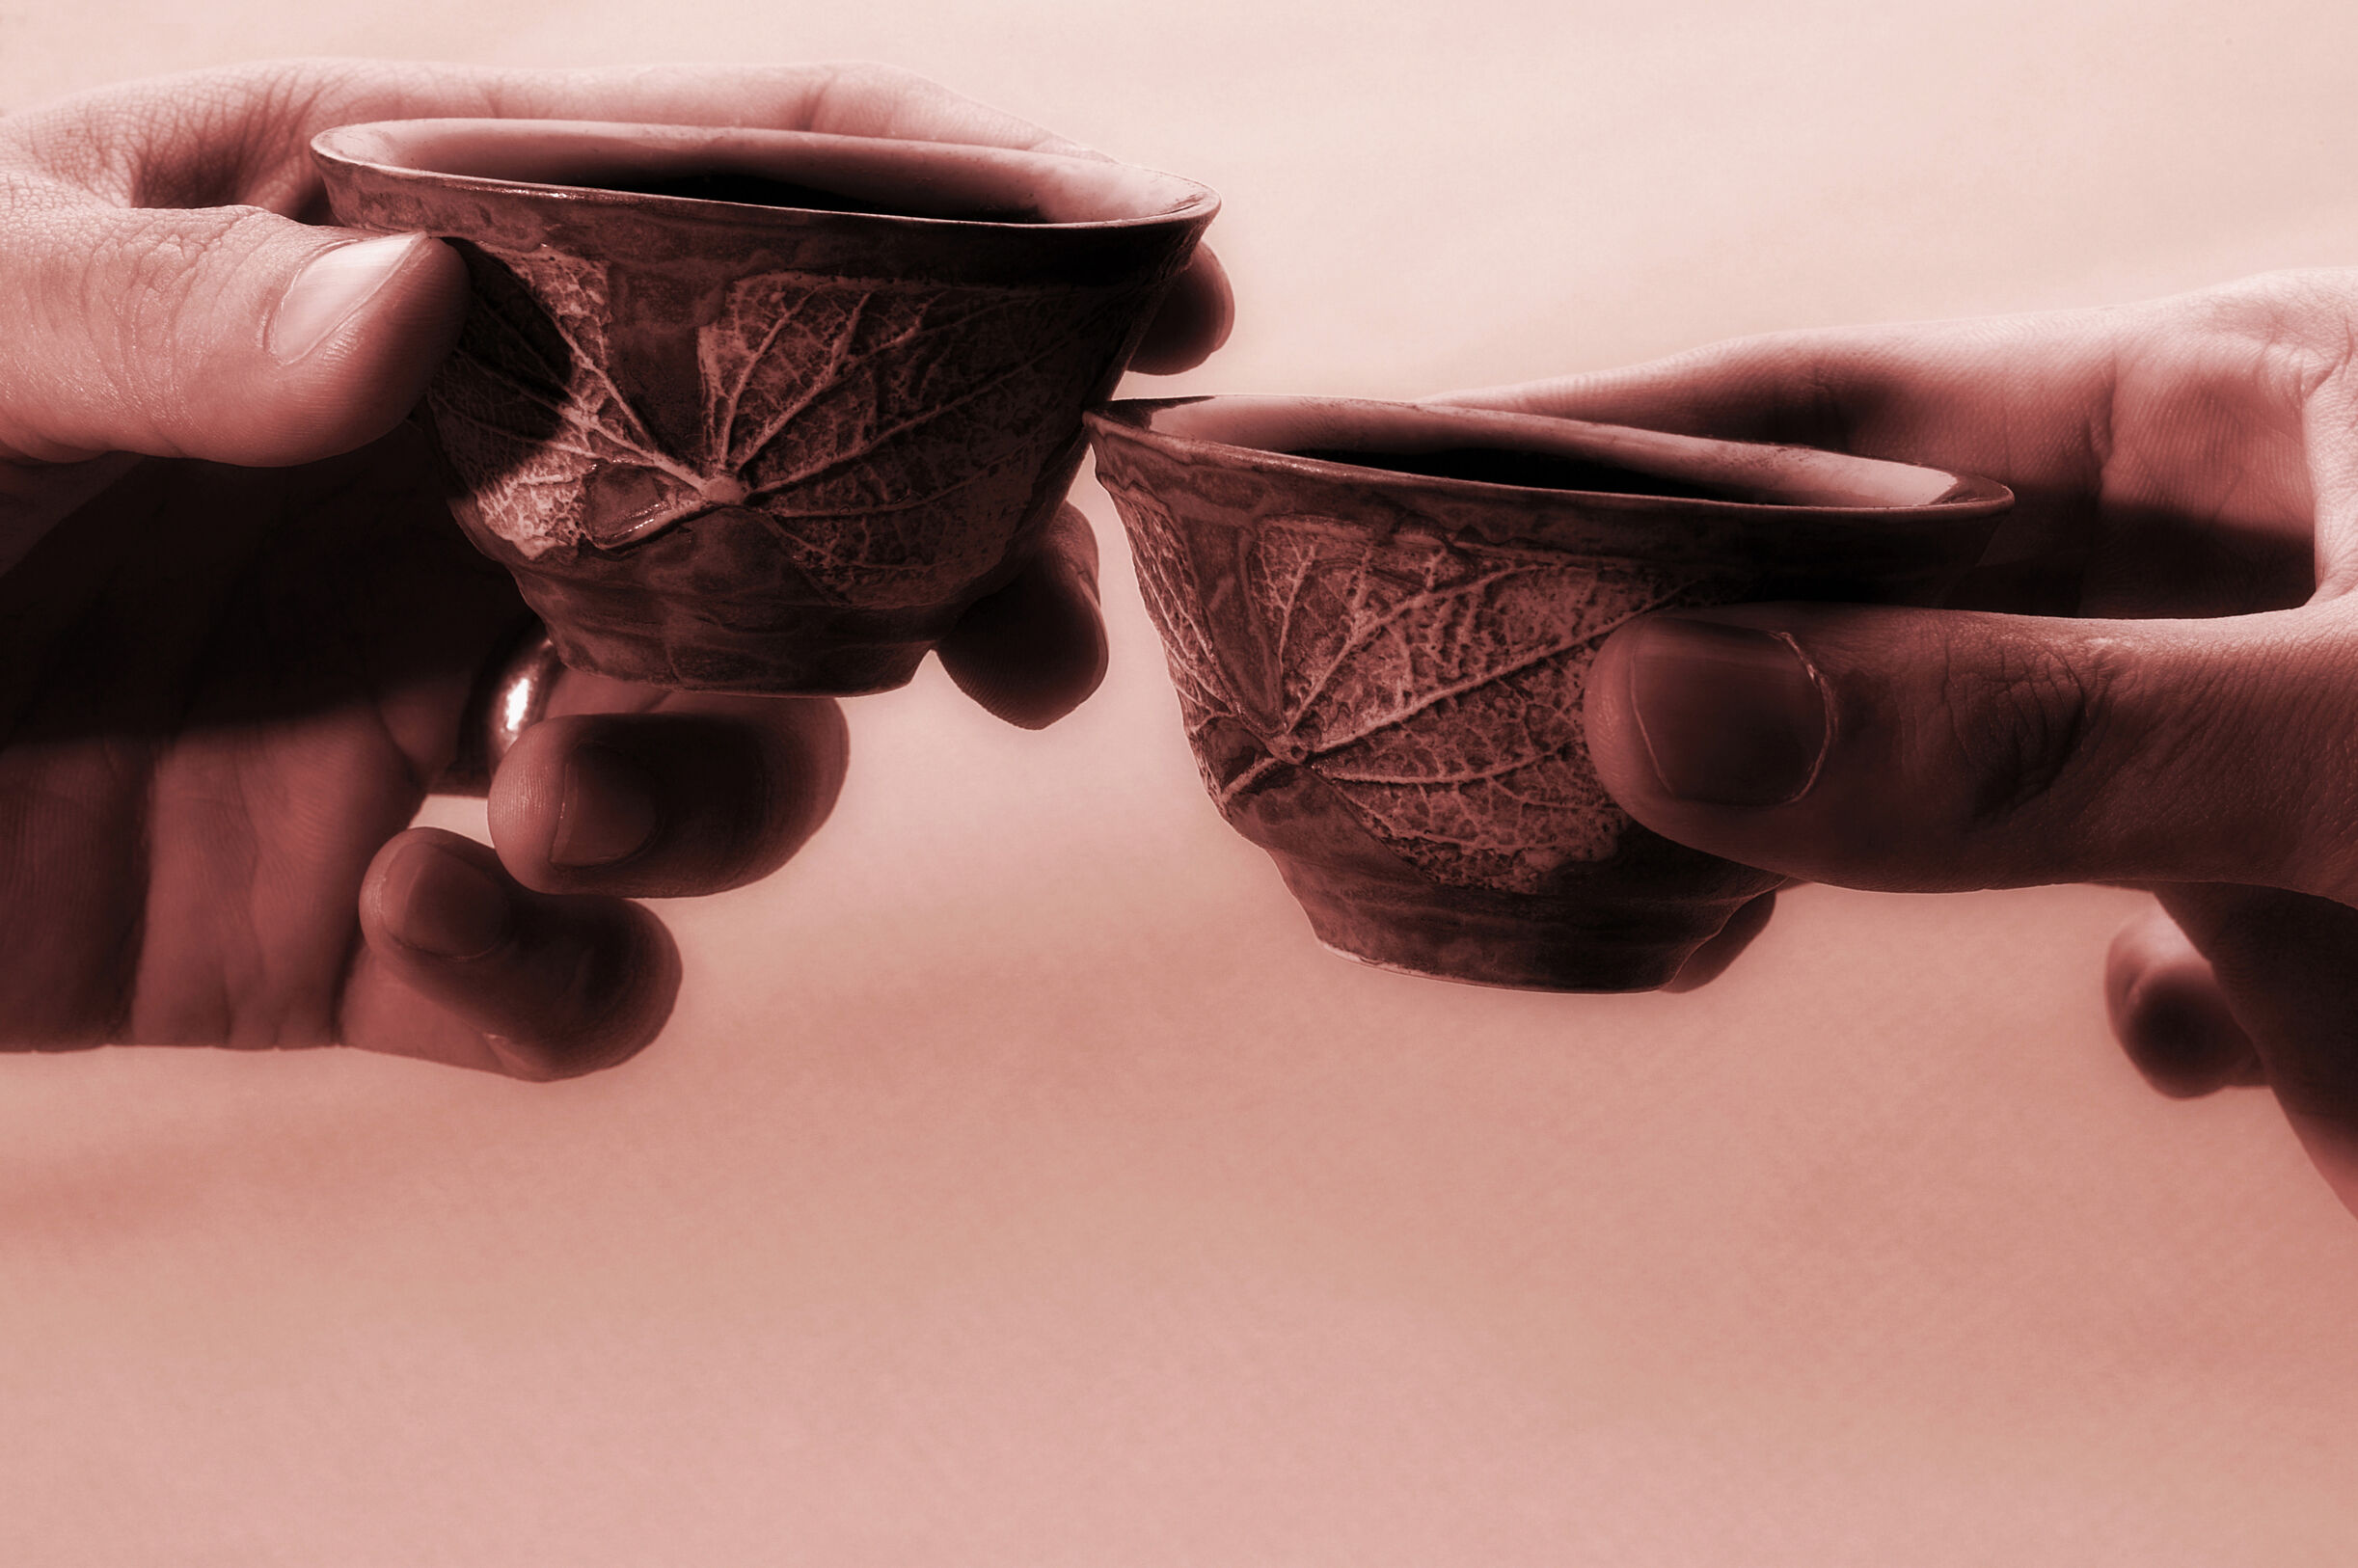 乌龙茶的历史、养生价值及冲泡方法